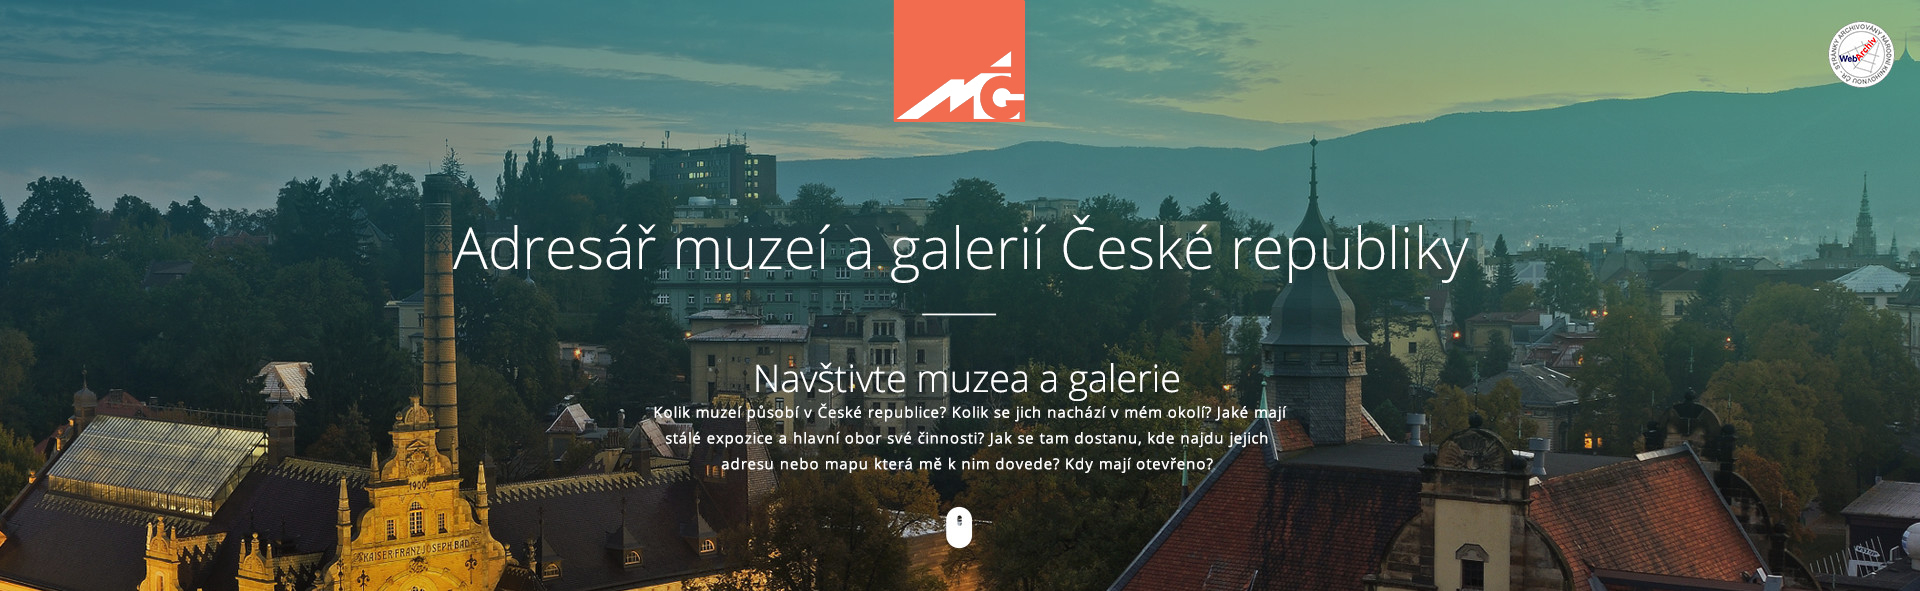 Asociace muzeí a galerií ČR - Adresář muzeí a galerií České republiky